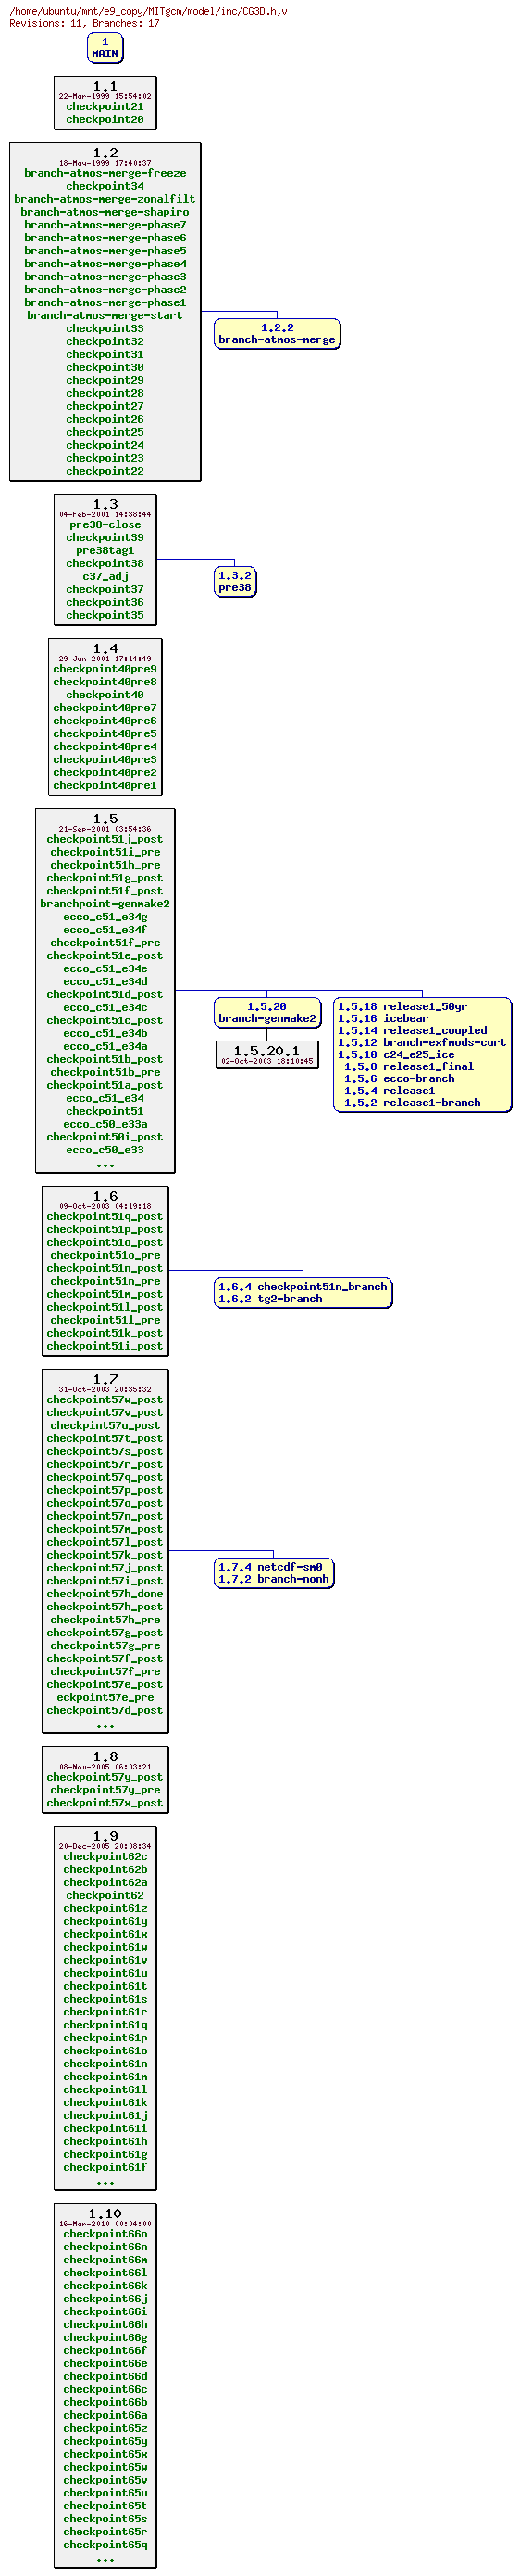 Revisions of MITgcm/model/inc/CG3D.h